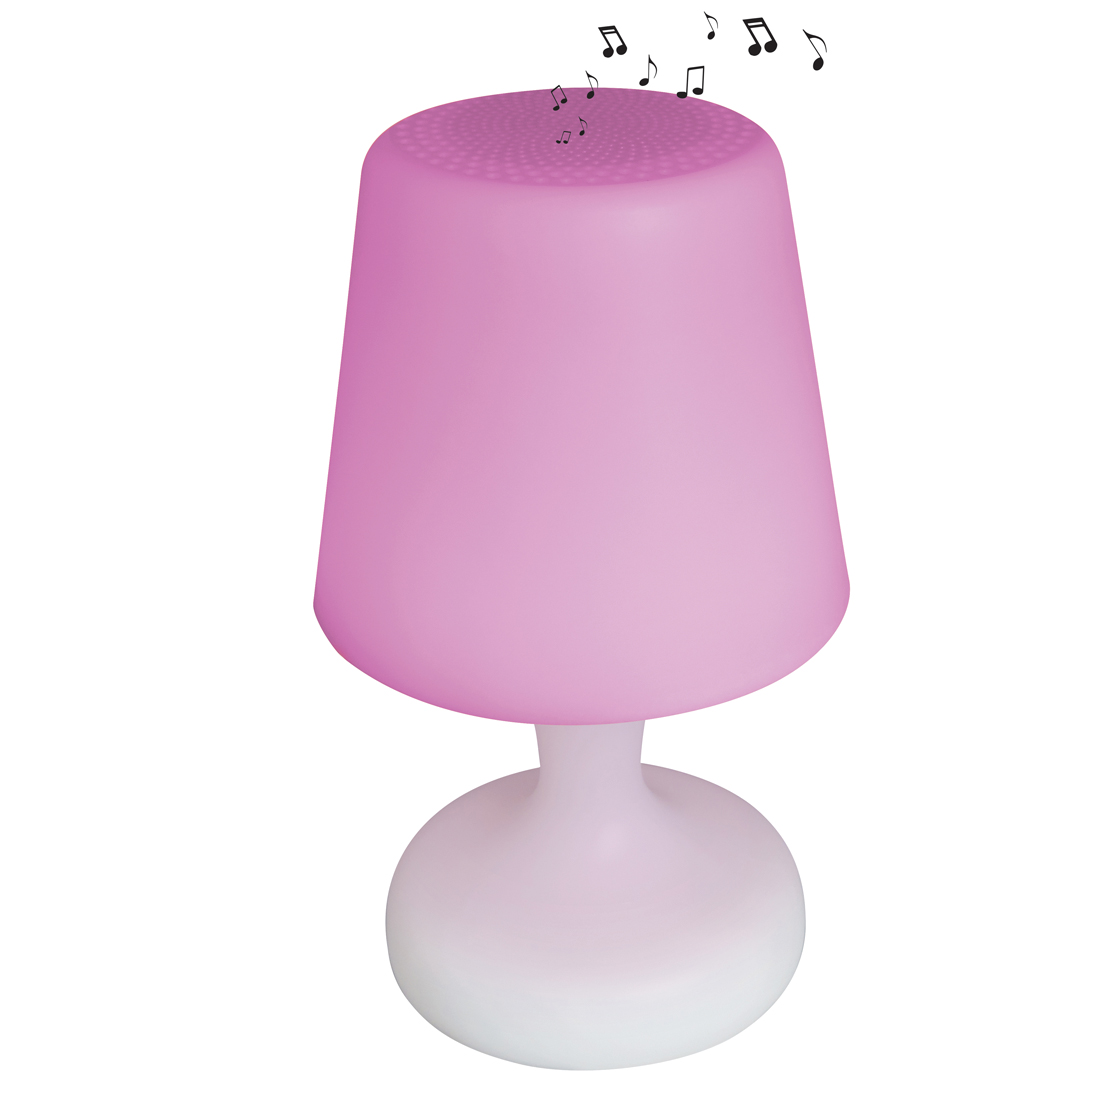 Stimmungslampen LED Lampe Mit Farbe Und Ton Bluetooth Mit Einer Fernbe Nung